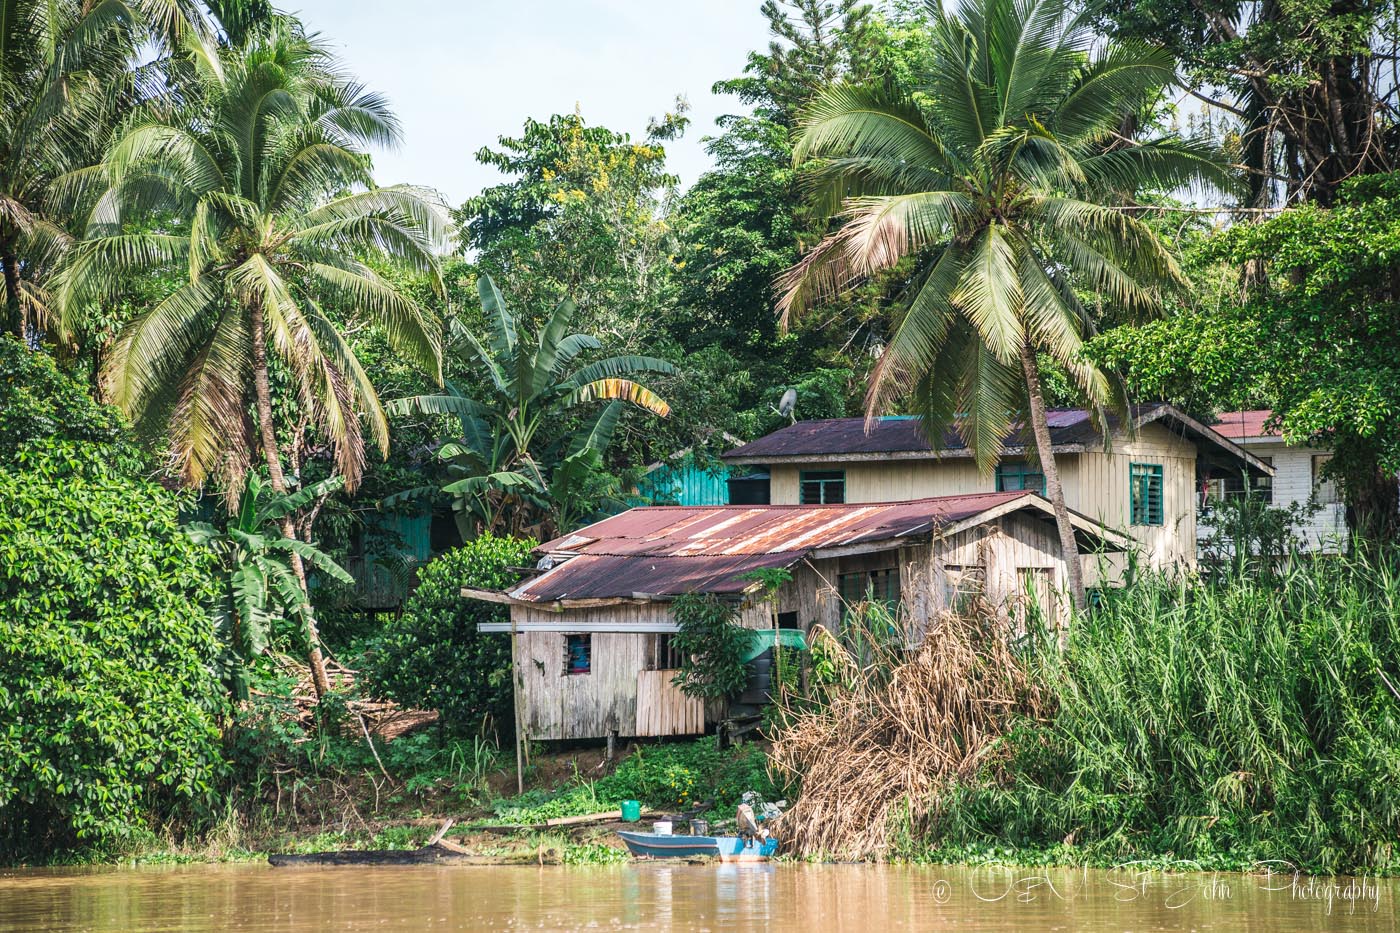 Village on the banks of Kinabatangan River. Sabah. Malaysian Borneo